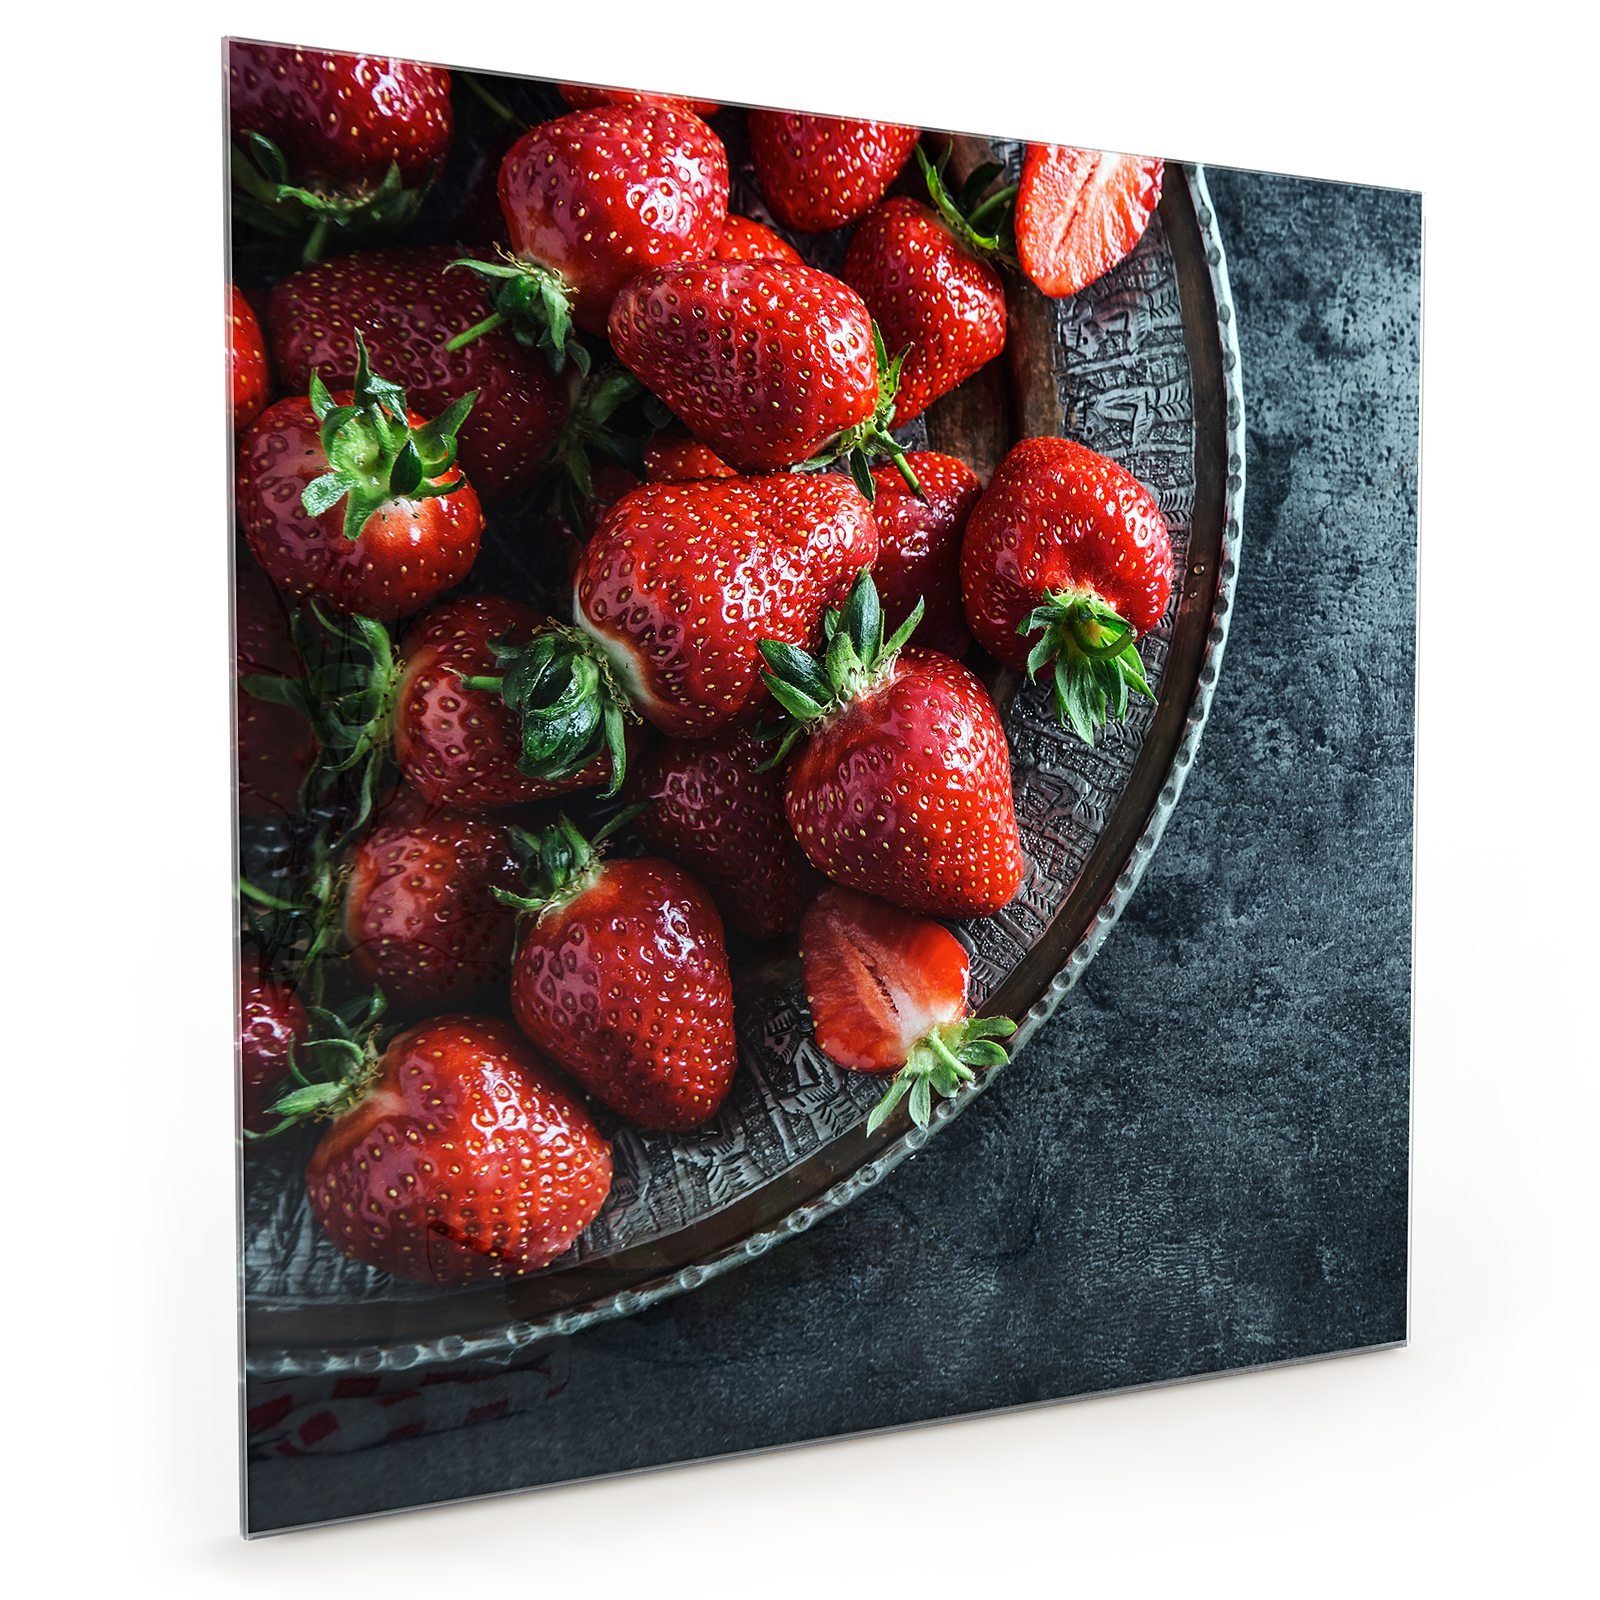 Primedeco Küchenrückwand Küchenrückwand Spritzschutz Glas auf Motiv mit Erdbeeren Teller